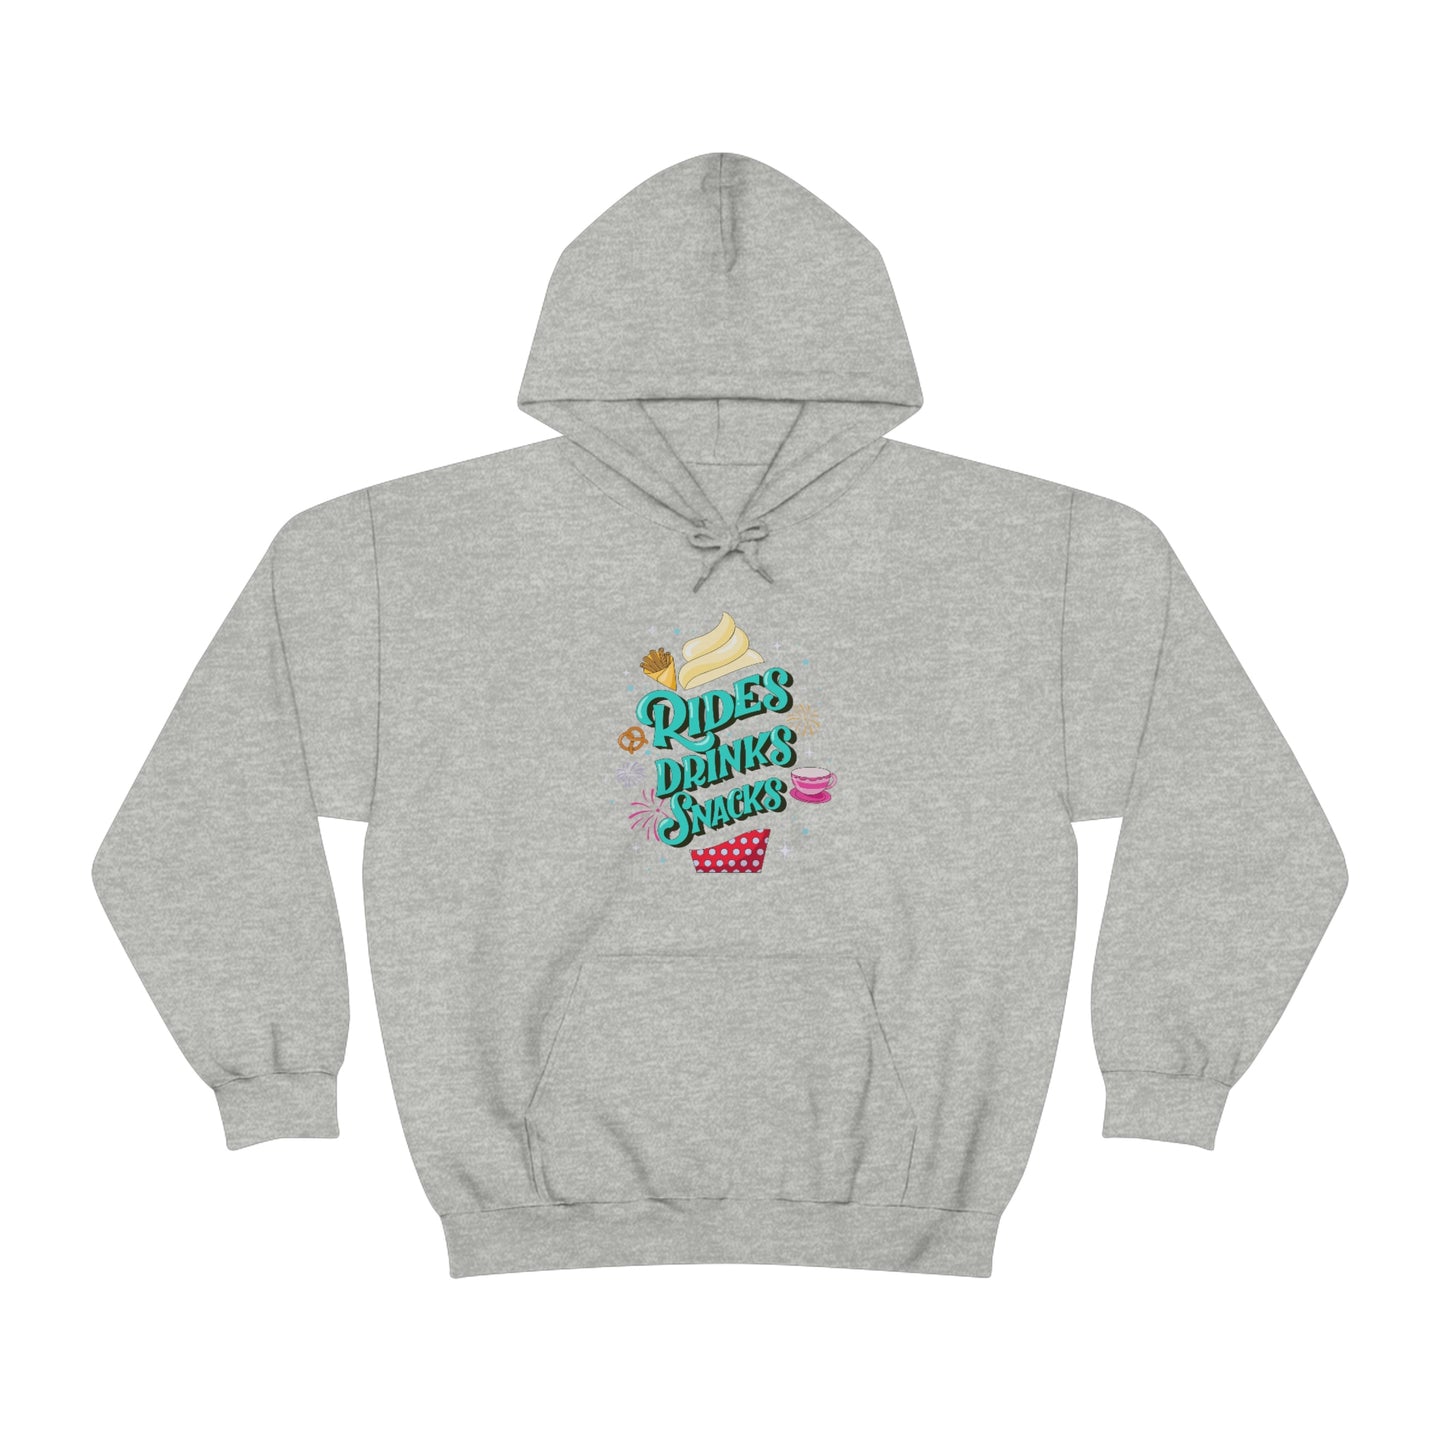 Rides, Drinks, Snacks - Adult Hoodie Sweatshirt